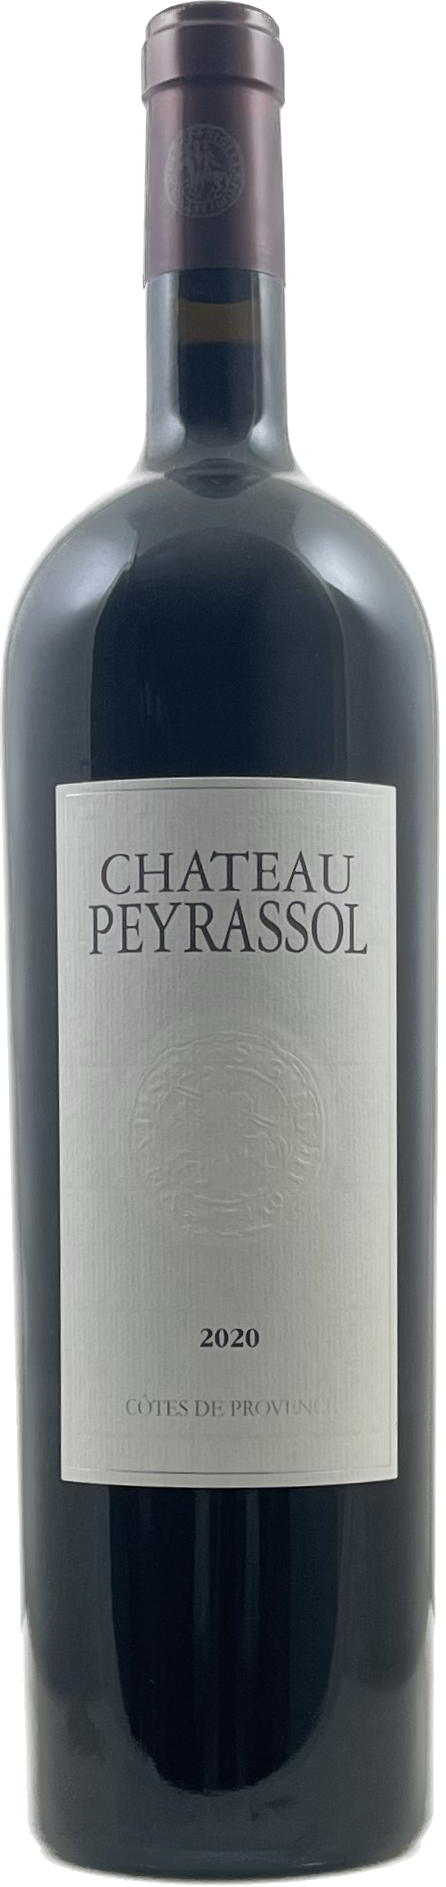 Château Peyrassol Rouge - Peyrassol 2020